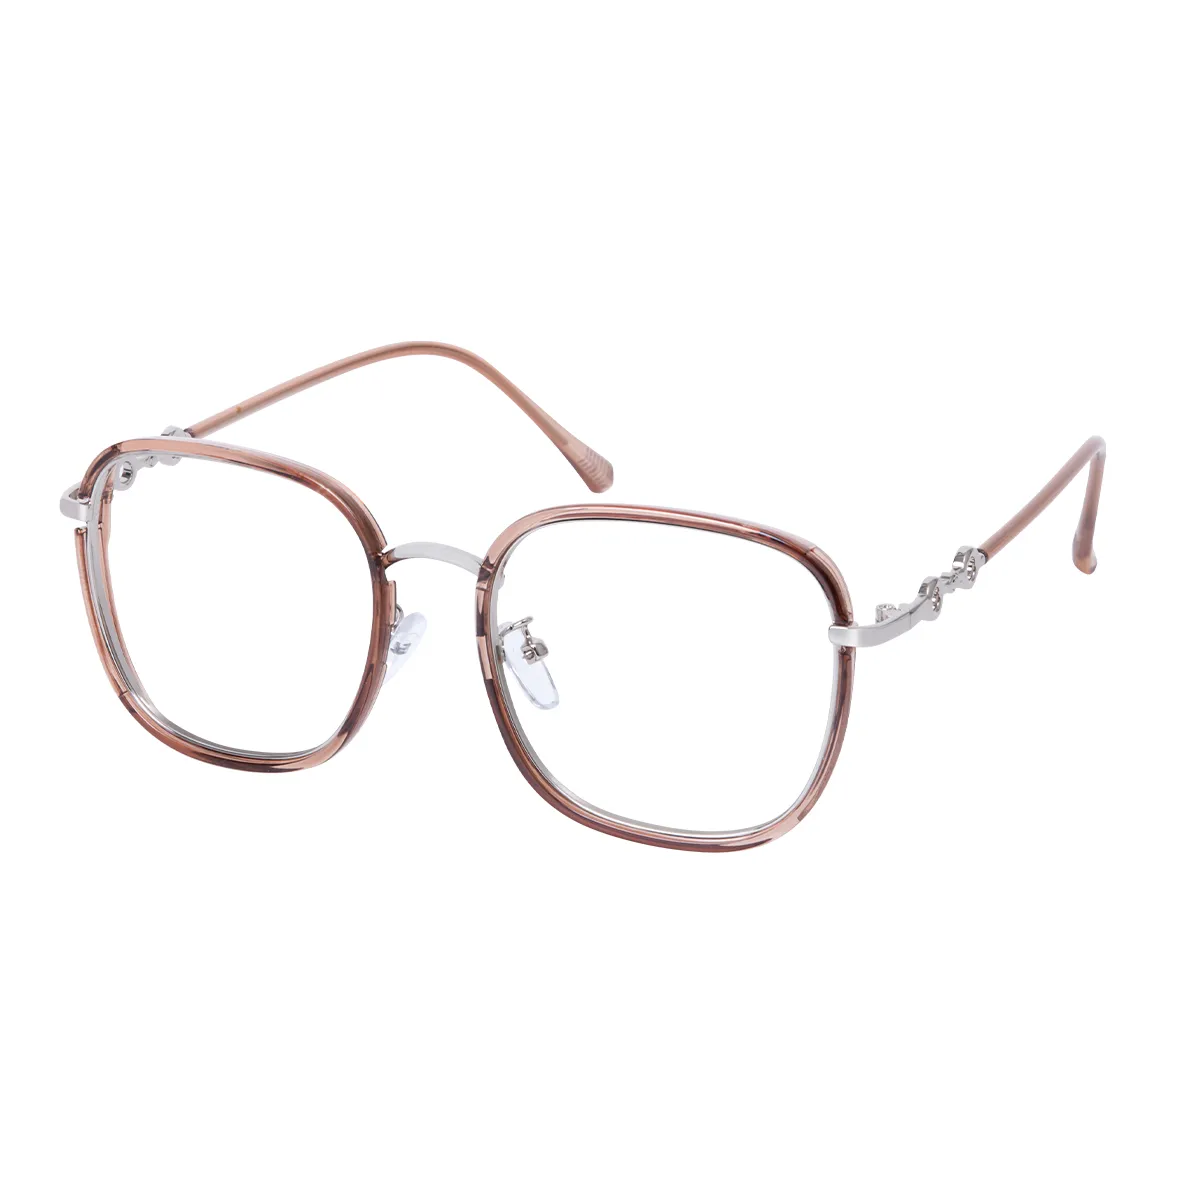 Poppy - Square Brown Glasses for Women